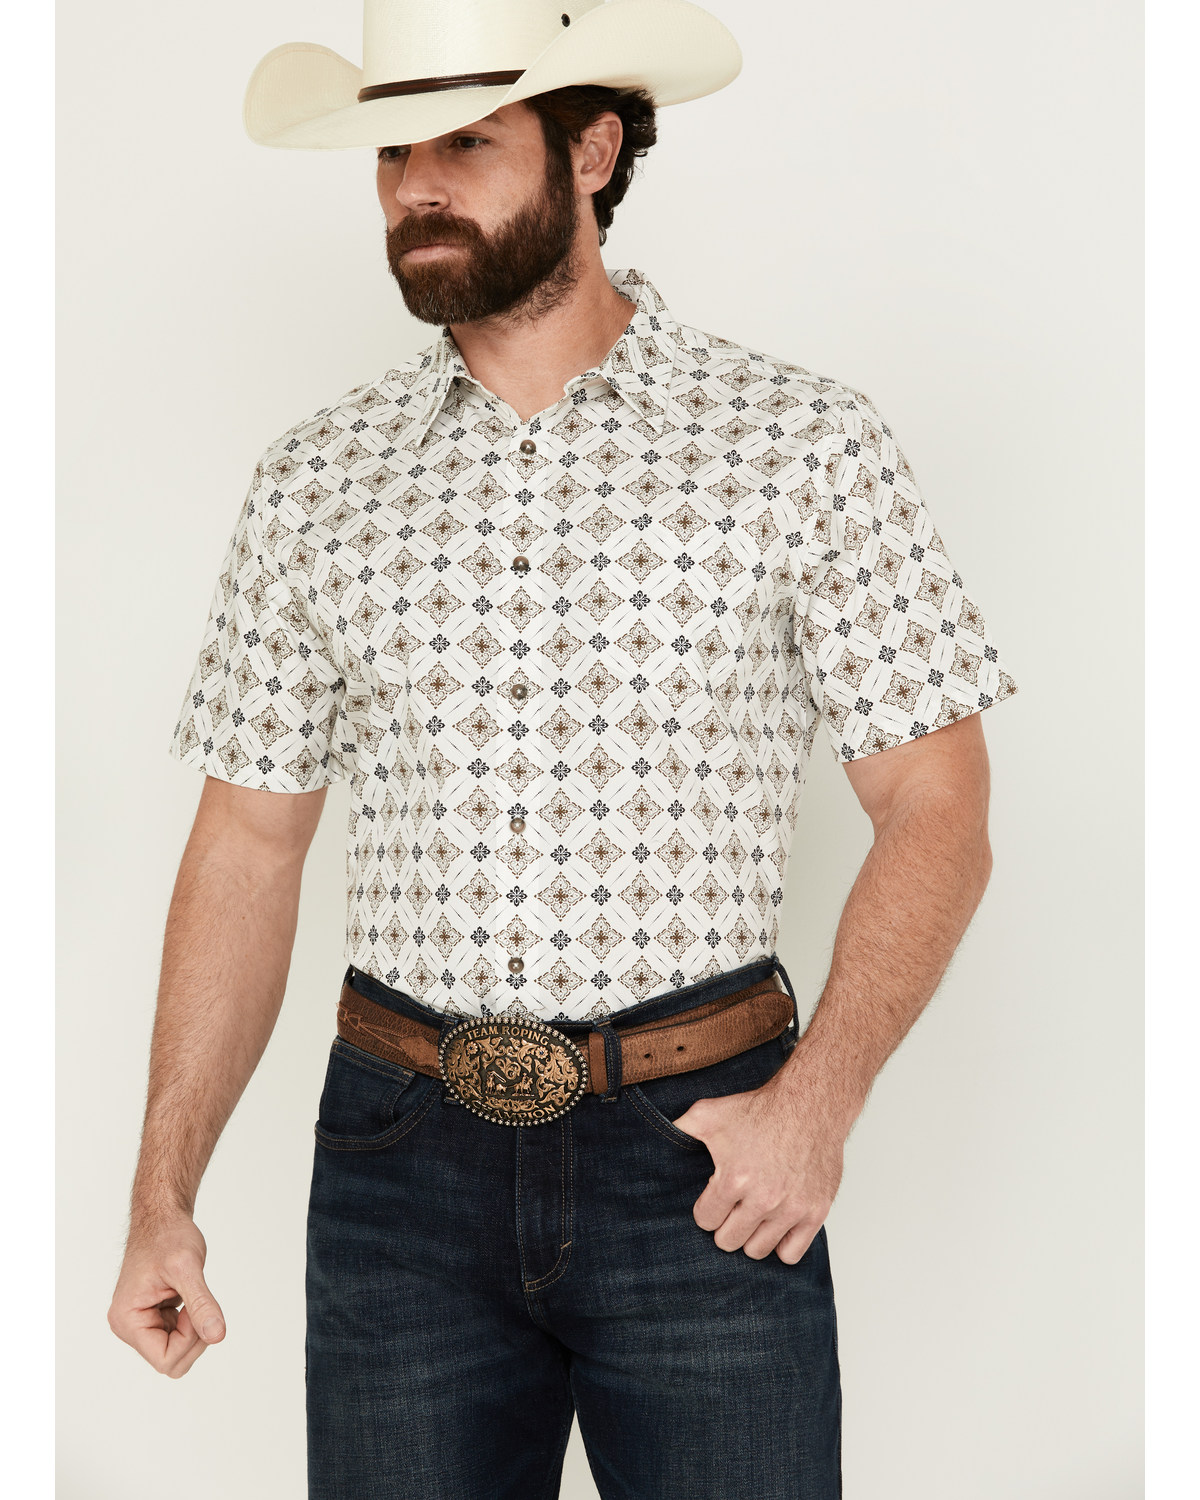 Gibson Men's Hubert Medallion Print Short Sleeve Button-Down Western Shirt